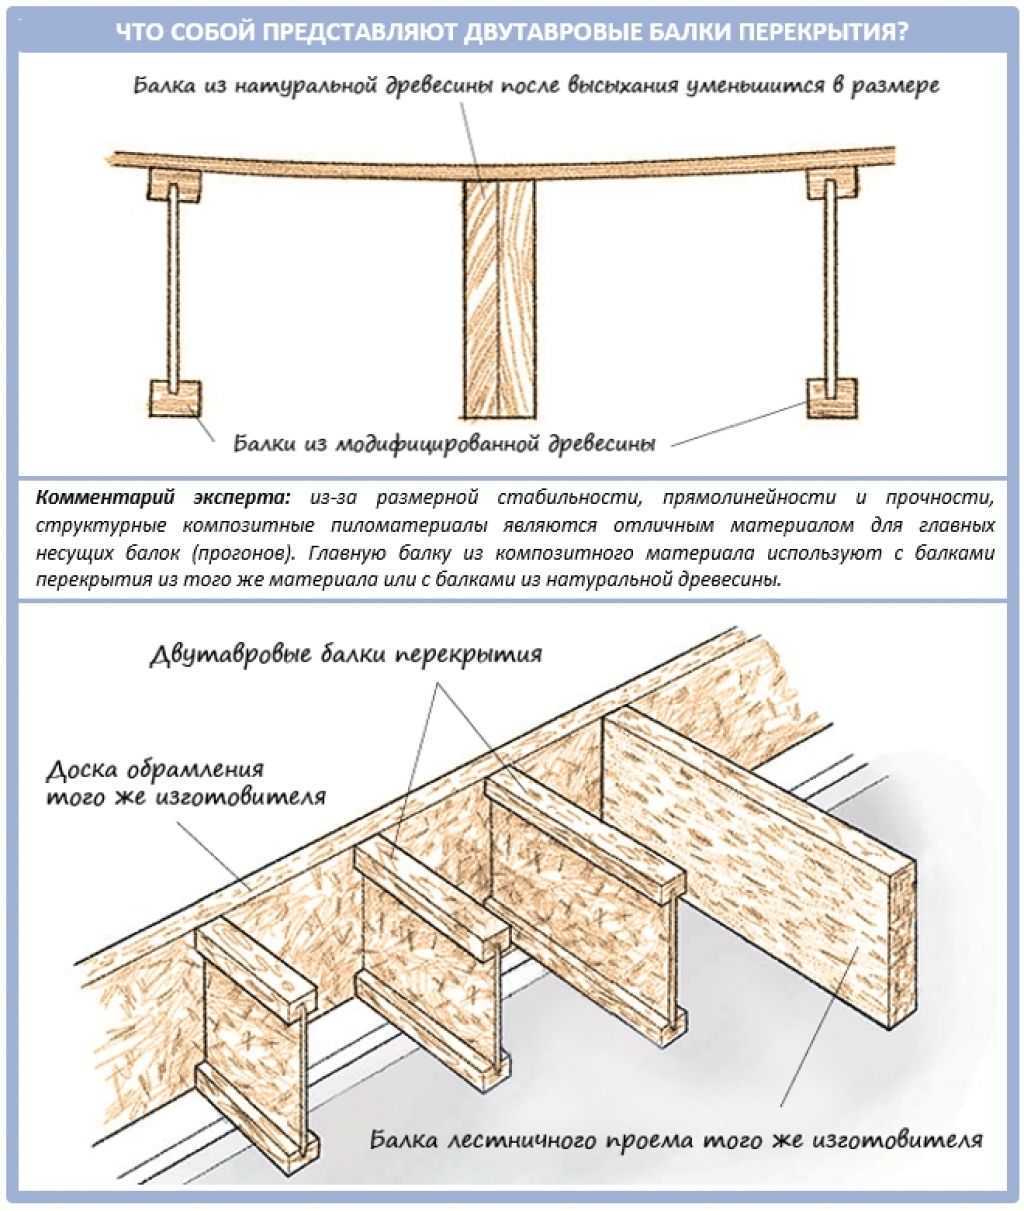 Схема деревянных двутавровых балок